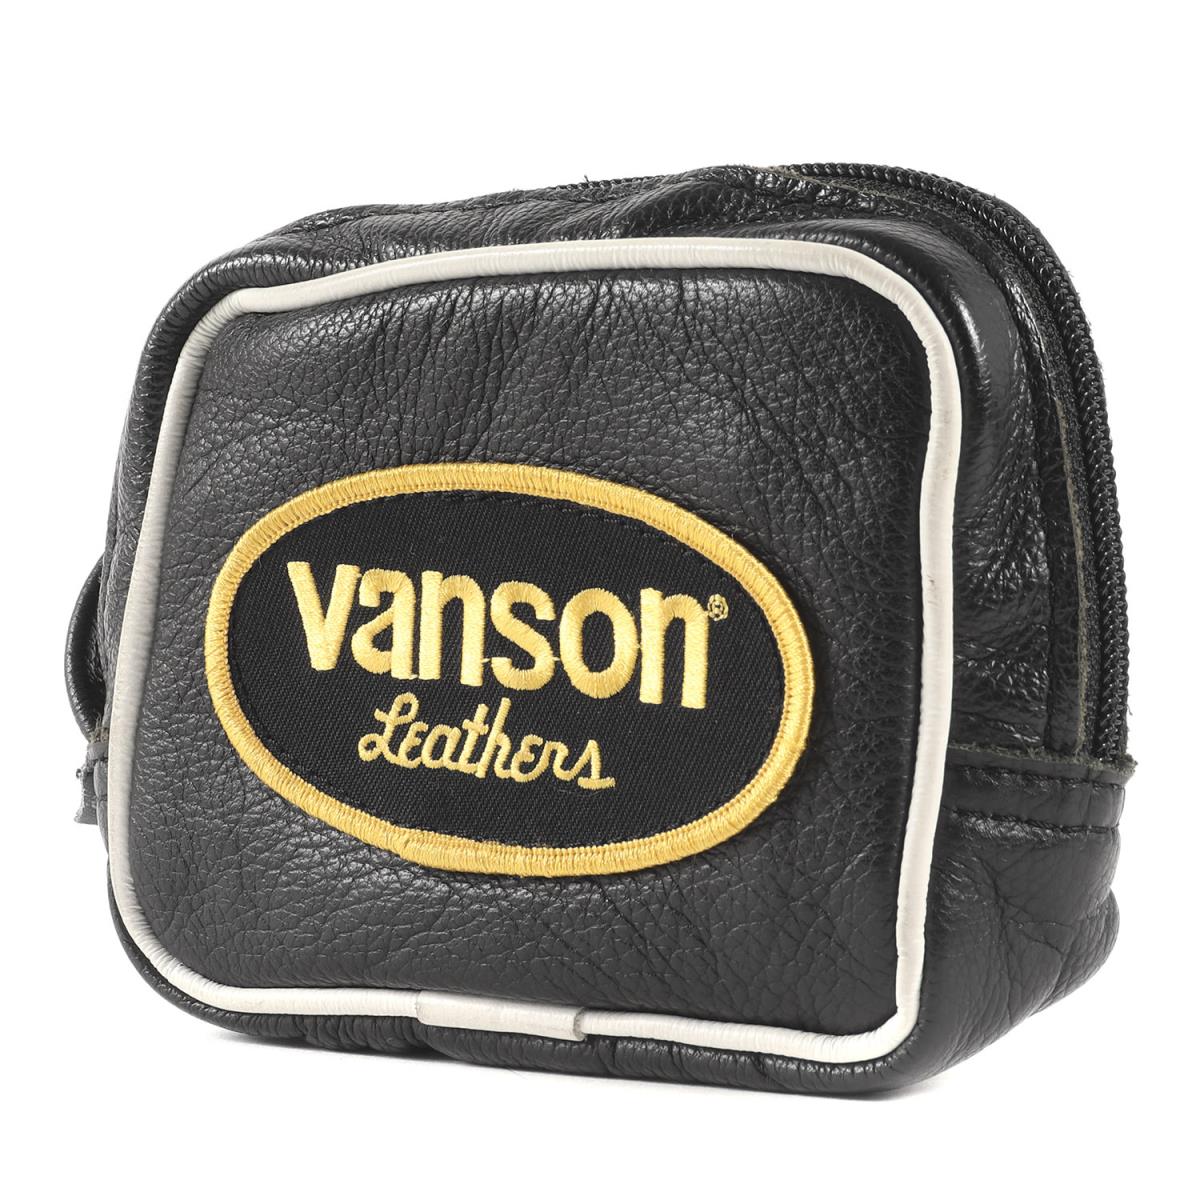 Supreme シュプリーム バッグ 17SS Vanson バンソン ワッペン レザー ウエストバッグ ポーチ Leather Wrist Bag ブラック 【メンズ】【中古】【K2909】